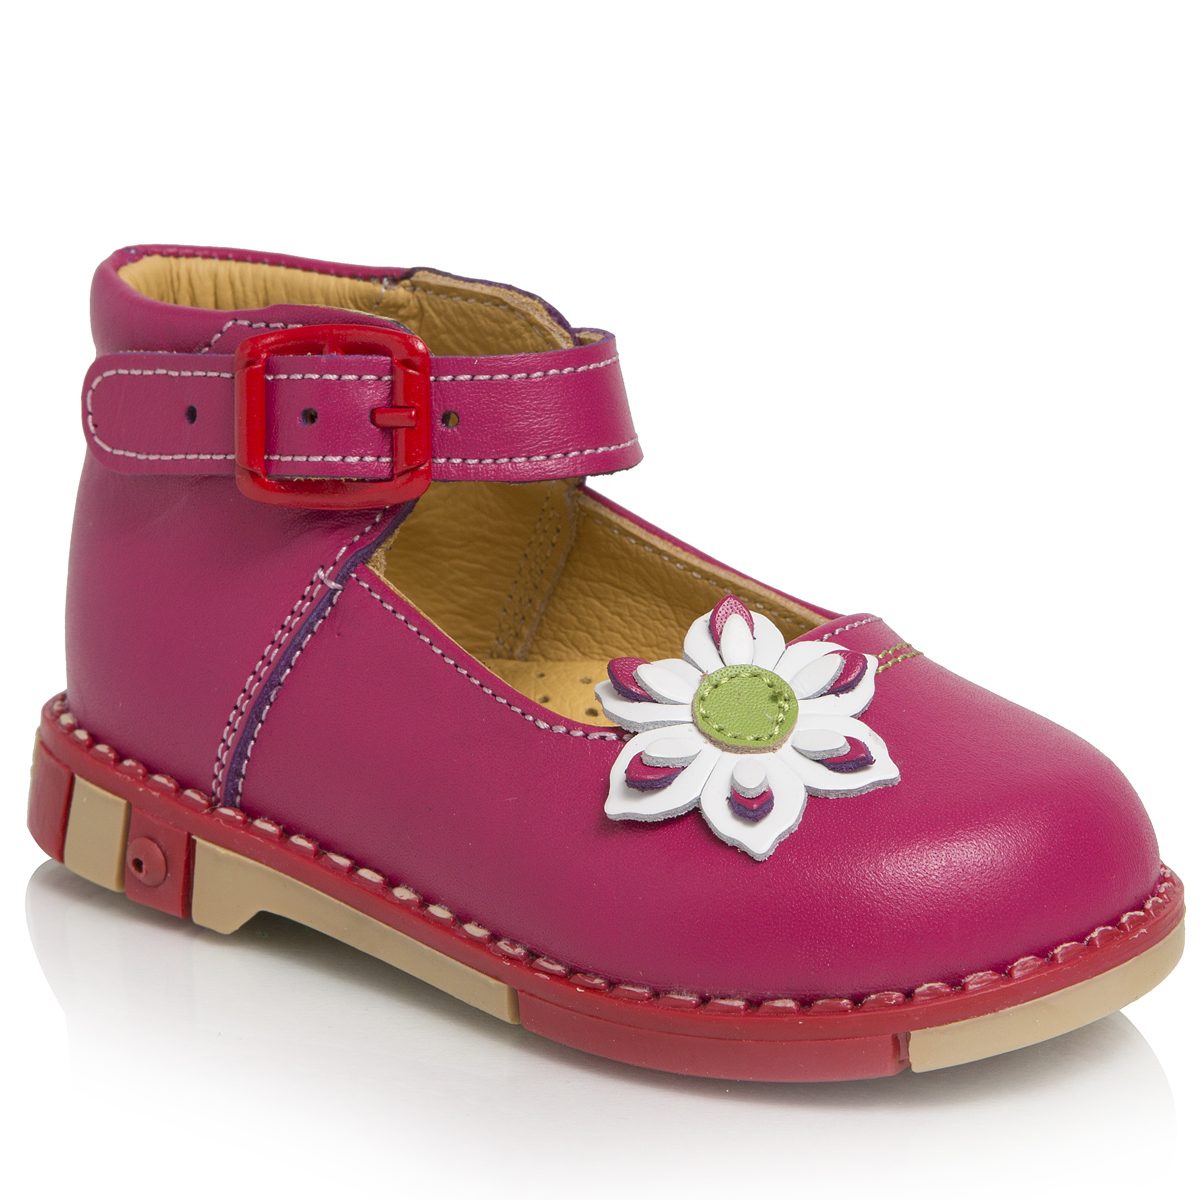 Туфли для девочки Таши Орто, цвет: малиновый. 211-20. Размер 20